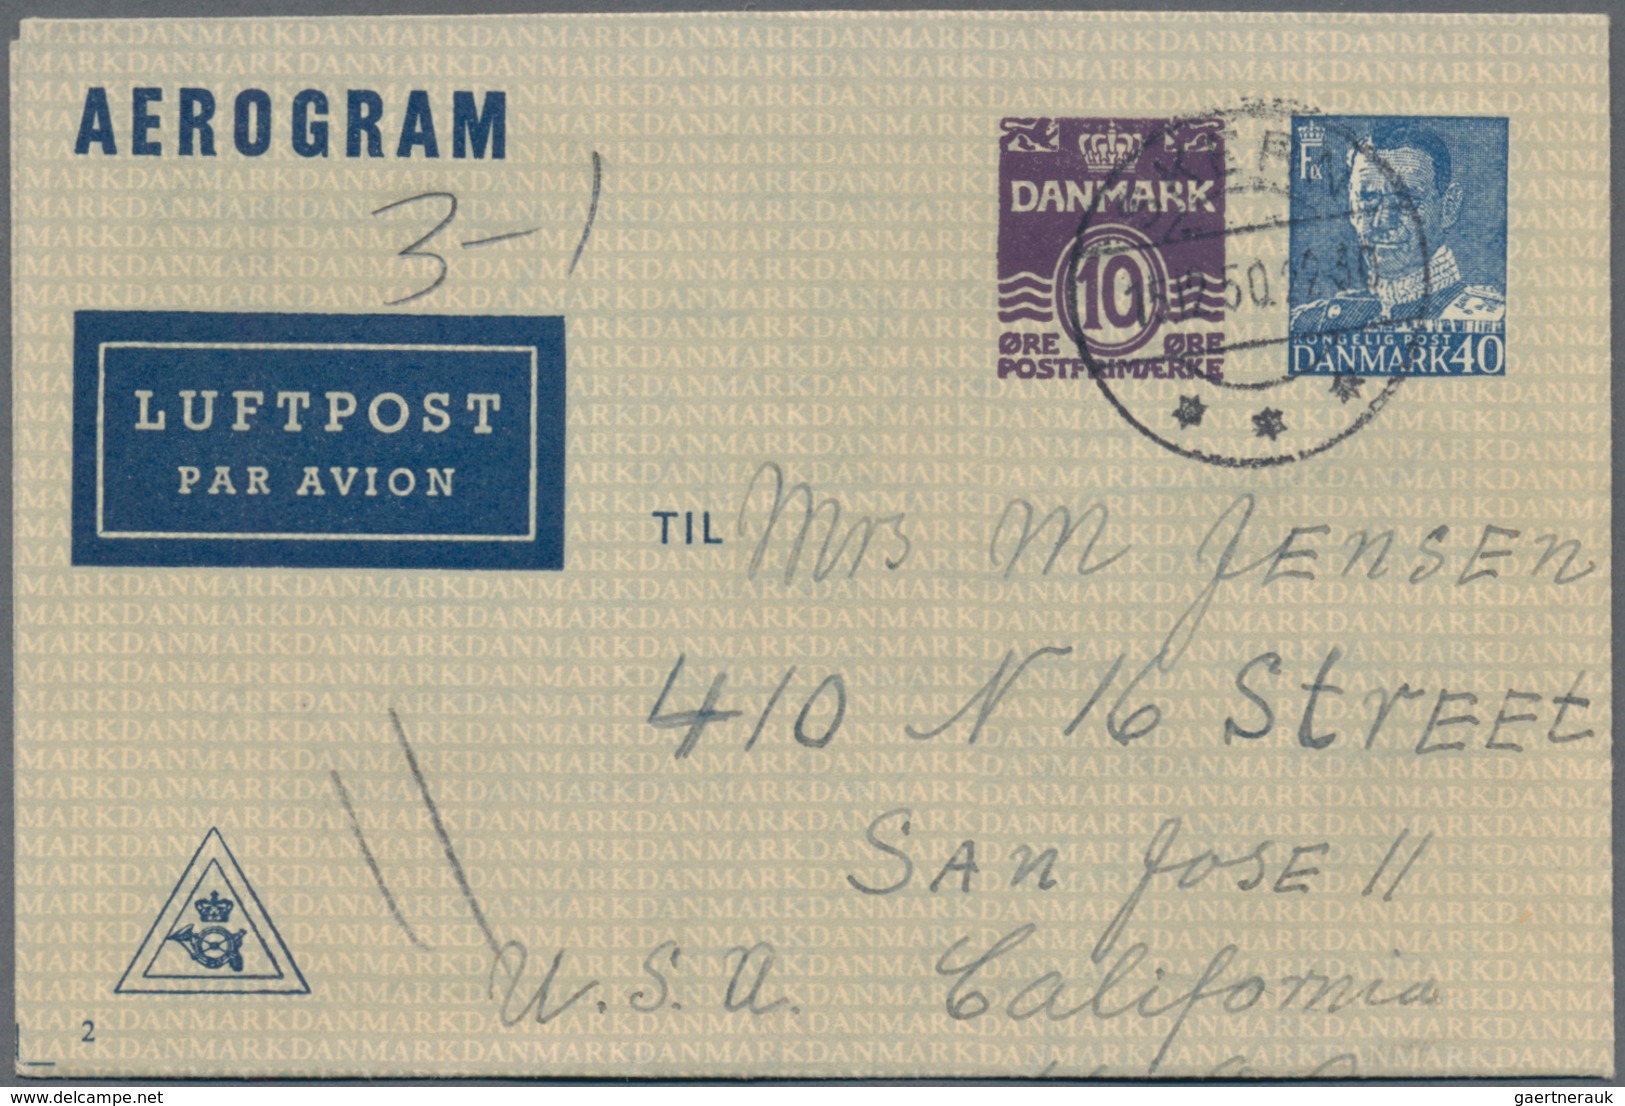 Dänemark: 1871/1995 ca. 250 unused/CTO-used/used postal stationeries (postal stationery cards and en